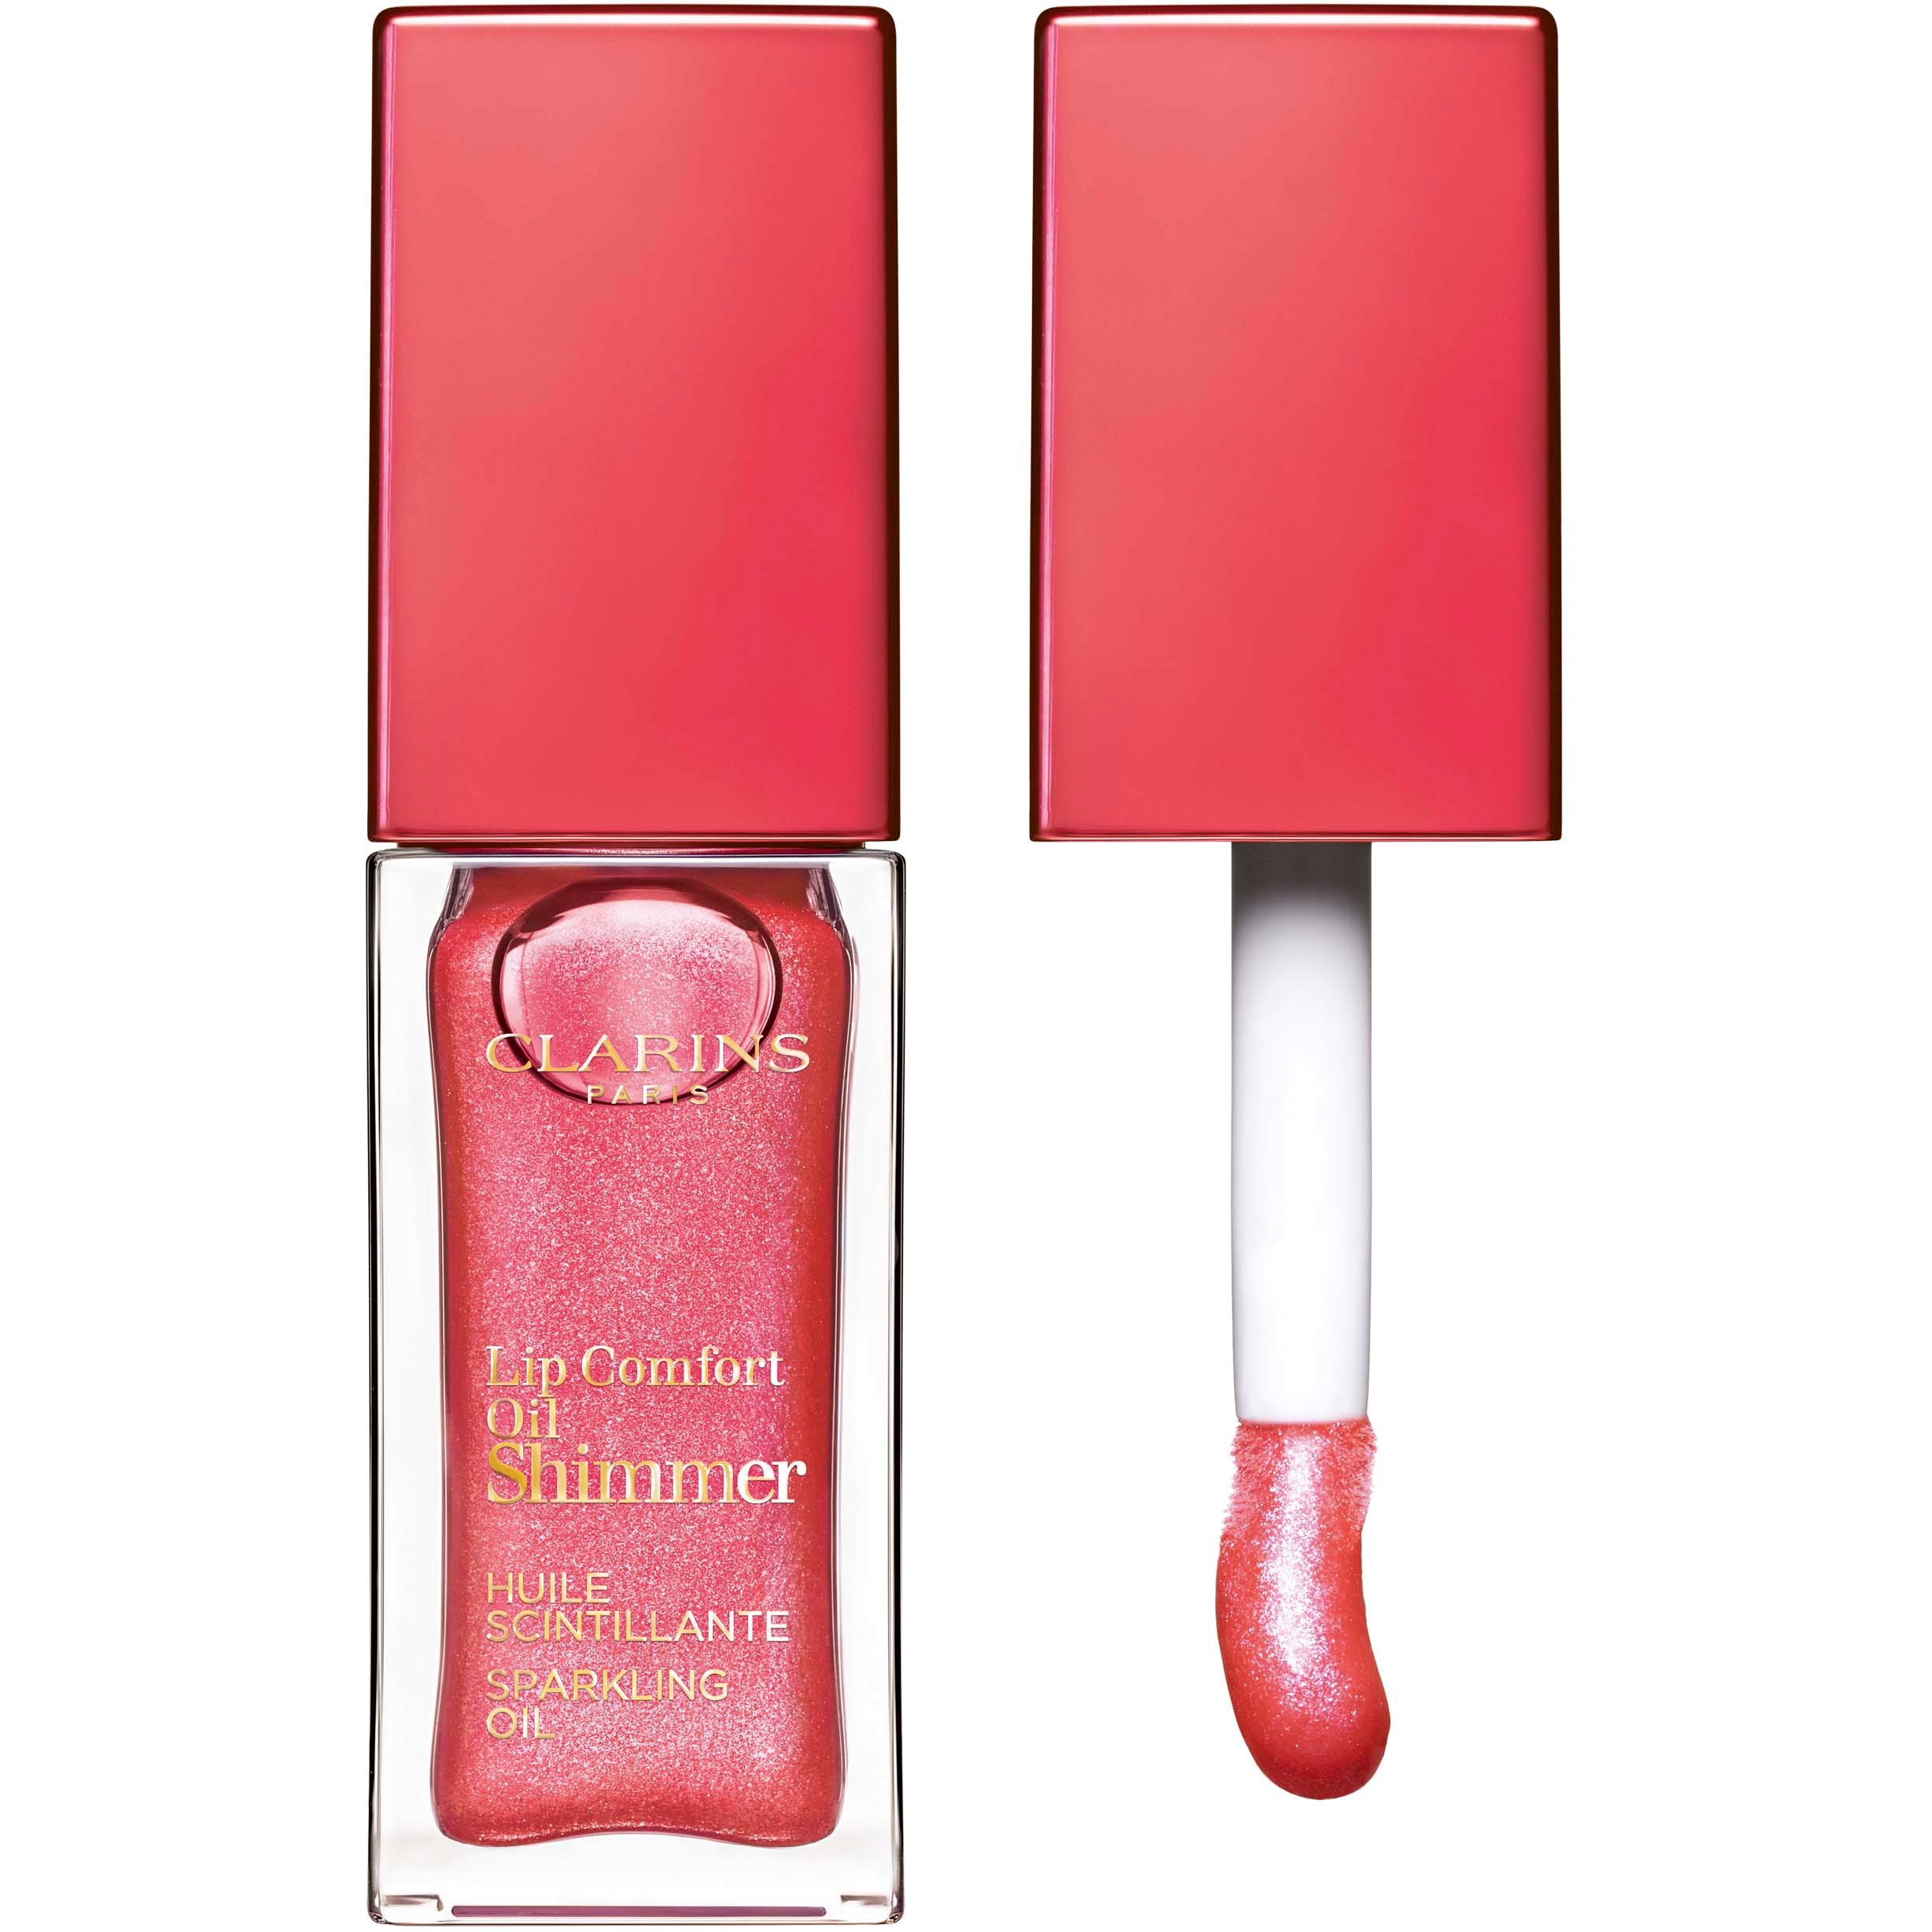 Bilde av Clarins Lip Comfort Oil Shimmer 04 Intense Pink Lady